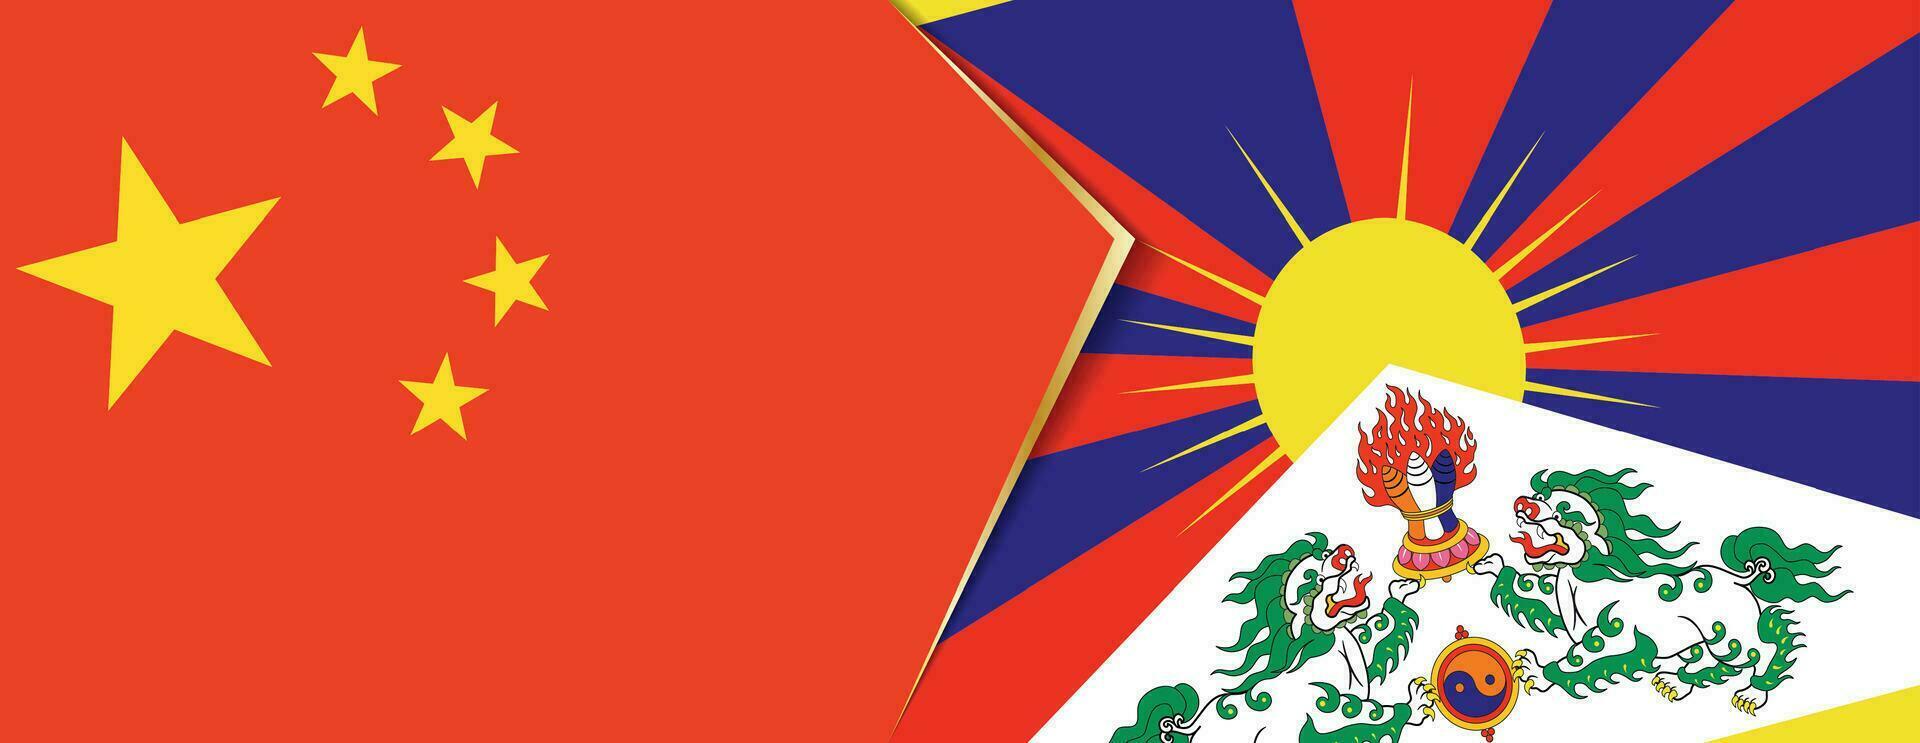 China und Tibet Flaggen, zwei Vektor Flaggen.